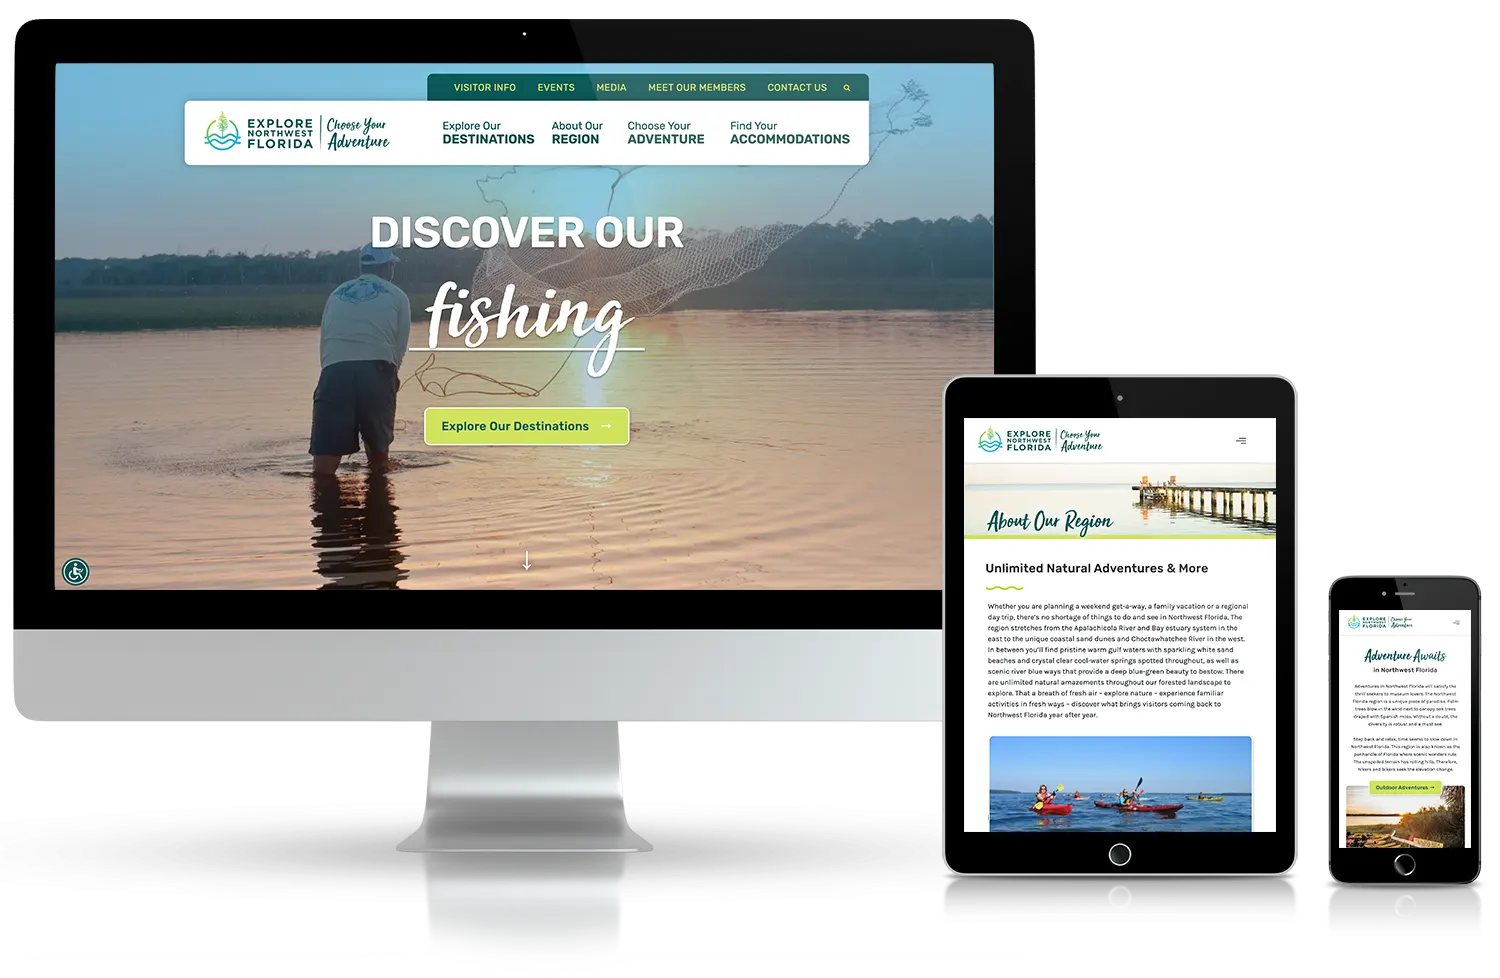 Website design for Explore NW Florida